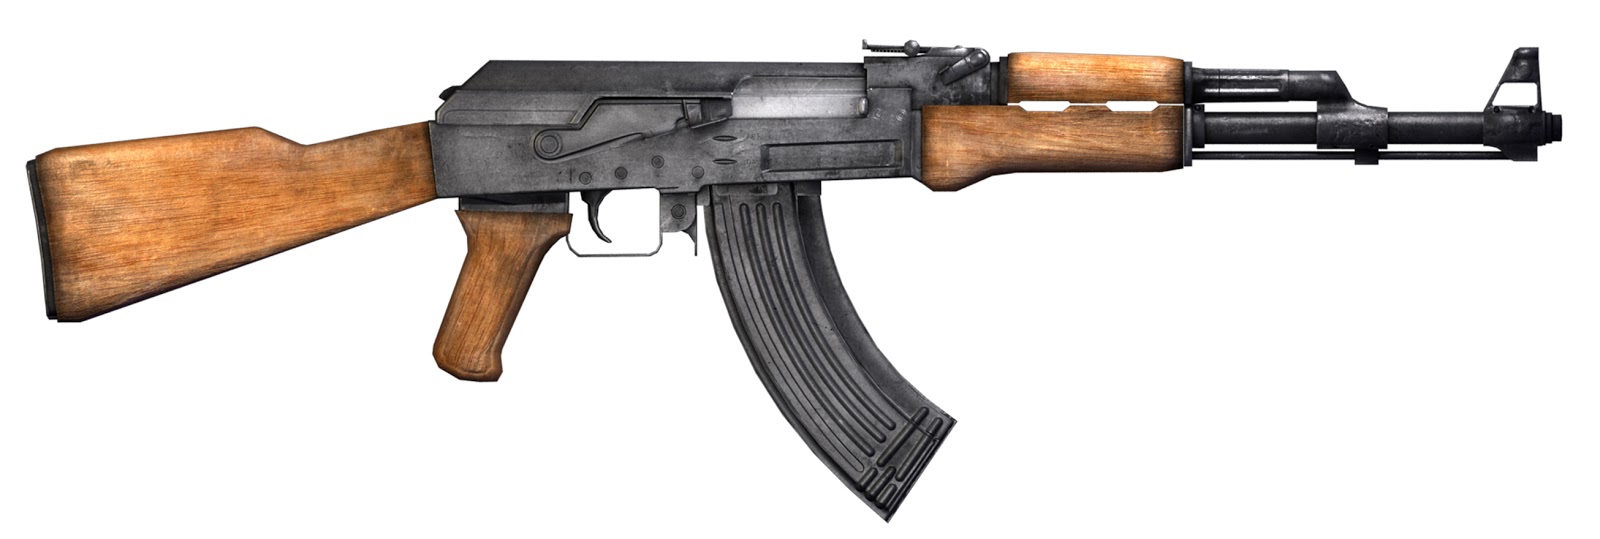 Minecraft AK-47